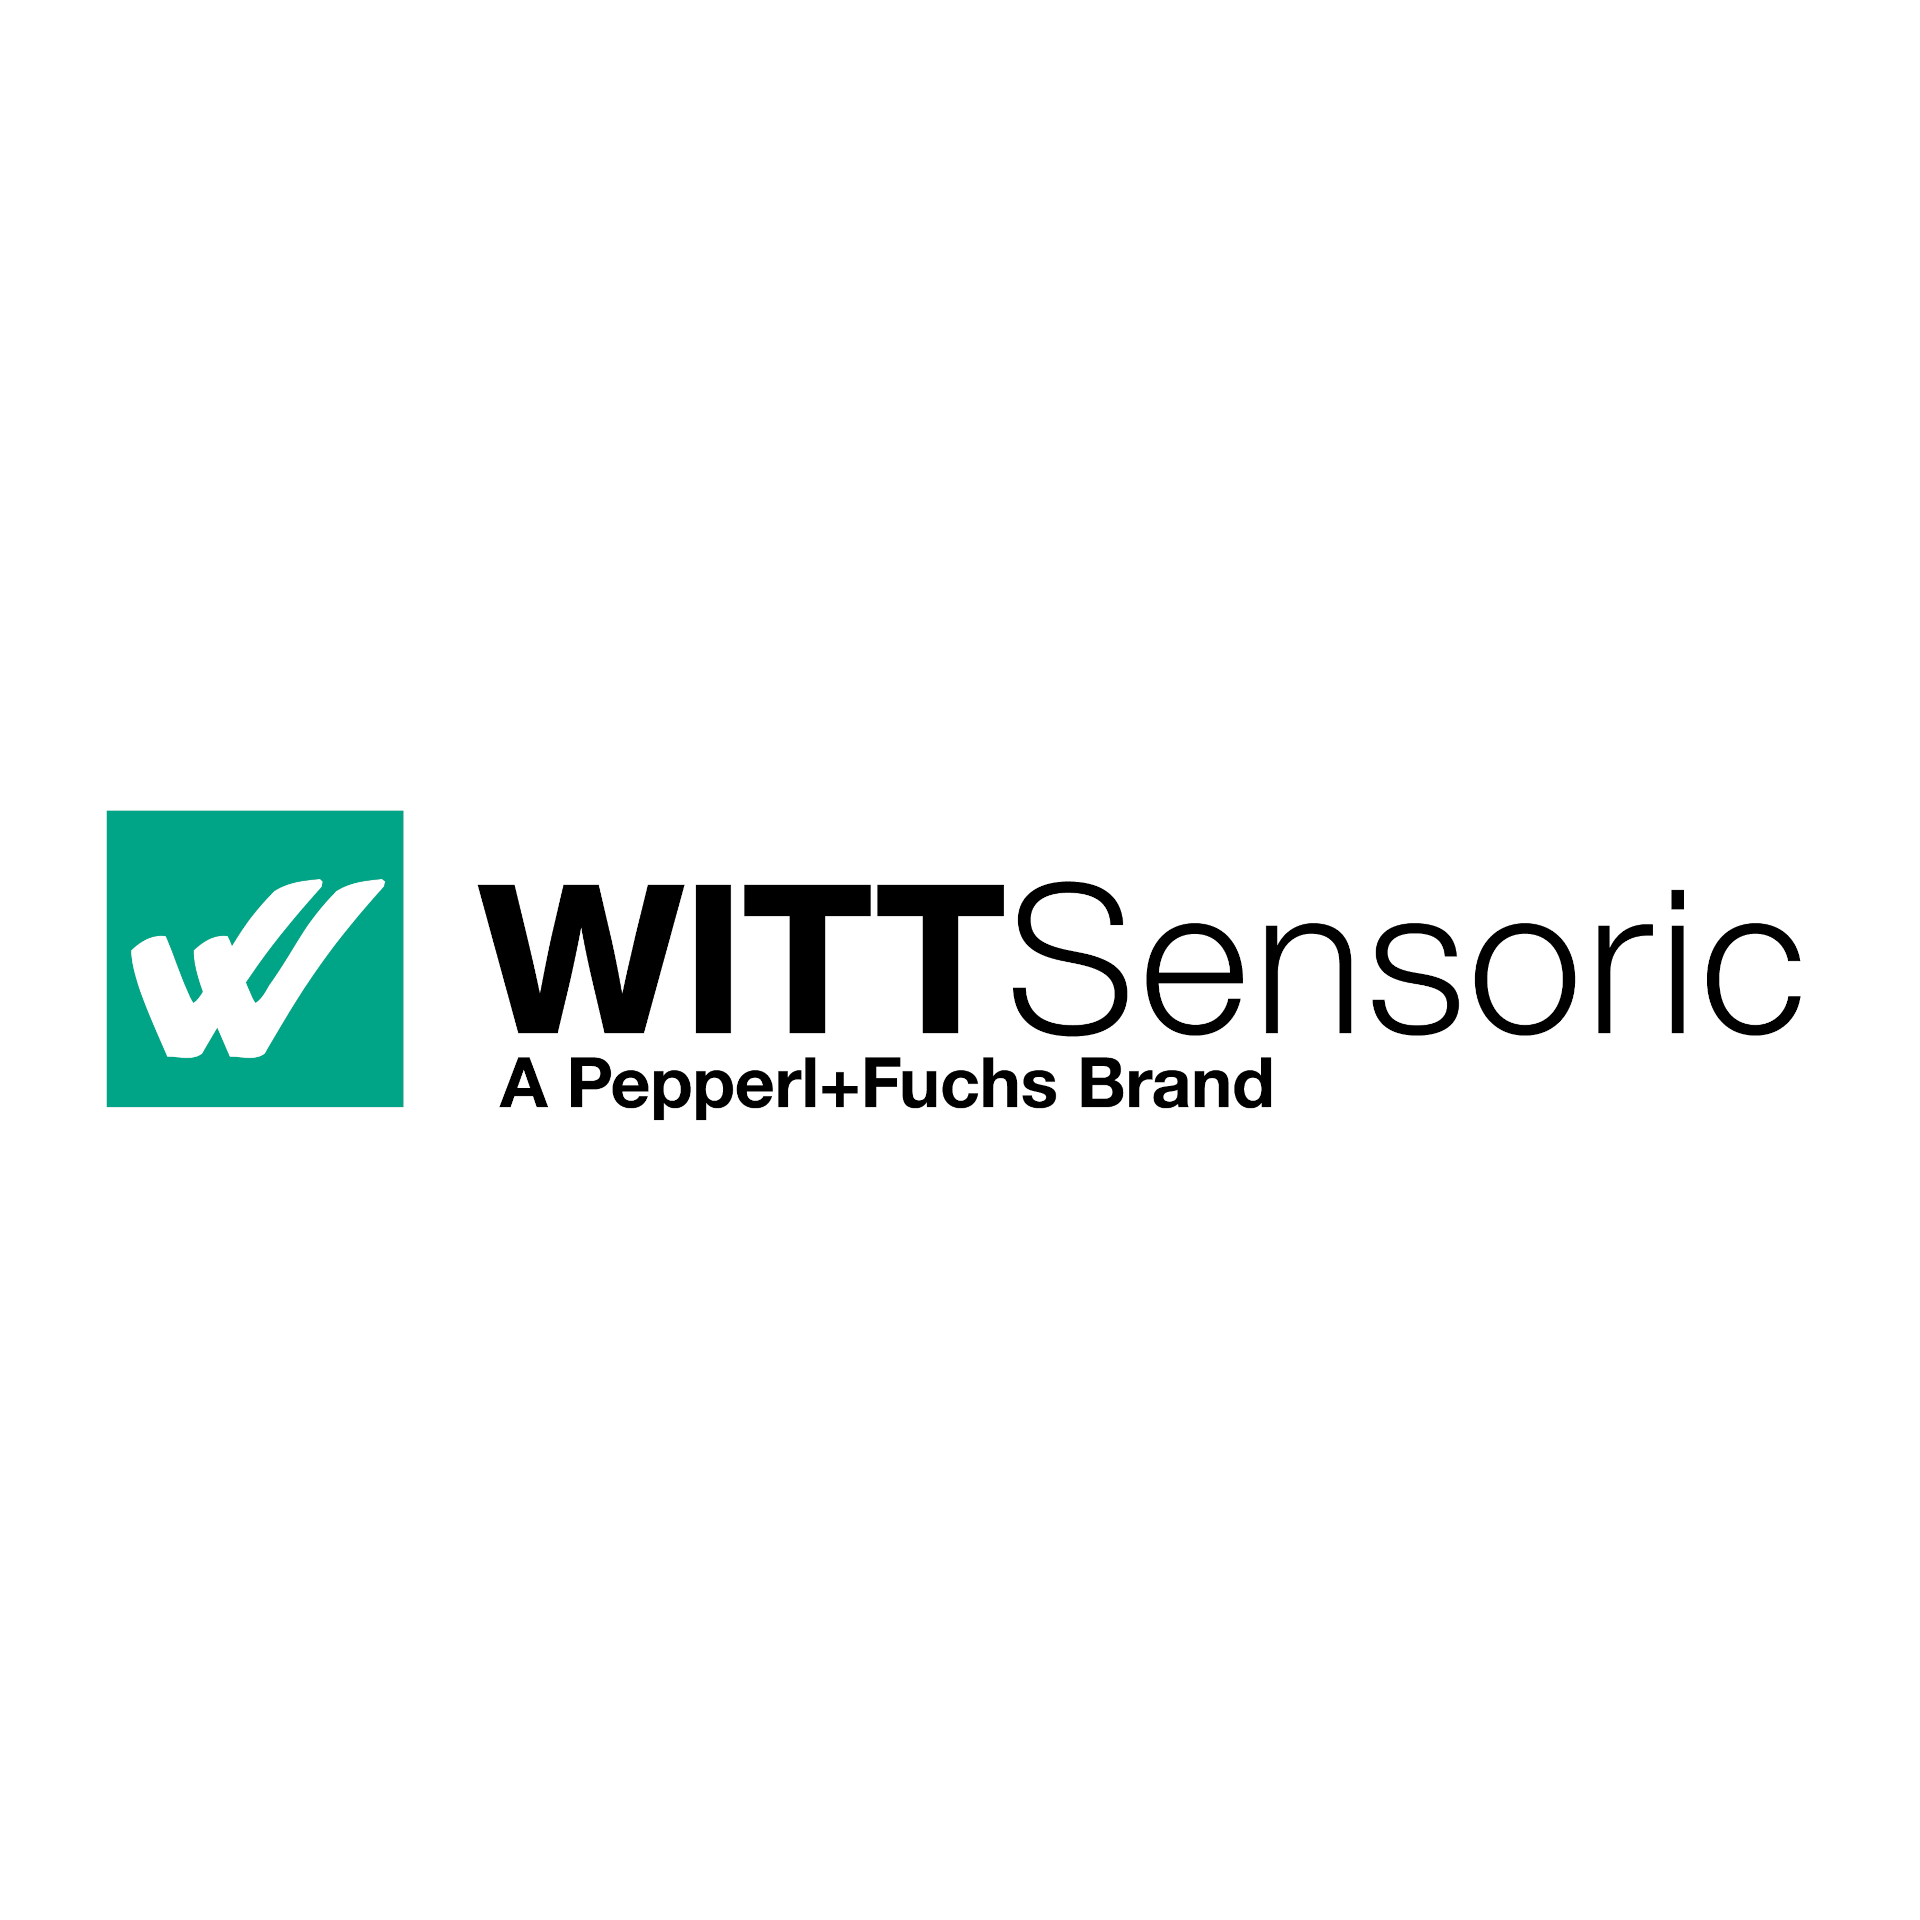 WITT Sensoric: la marca de Pepperl+Fuchs para automatización de puertas